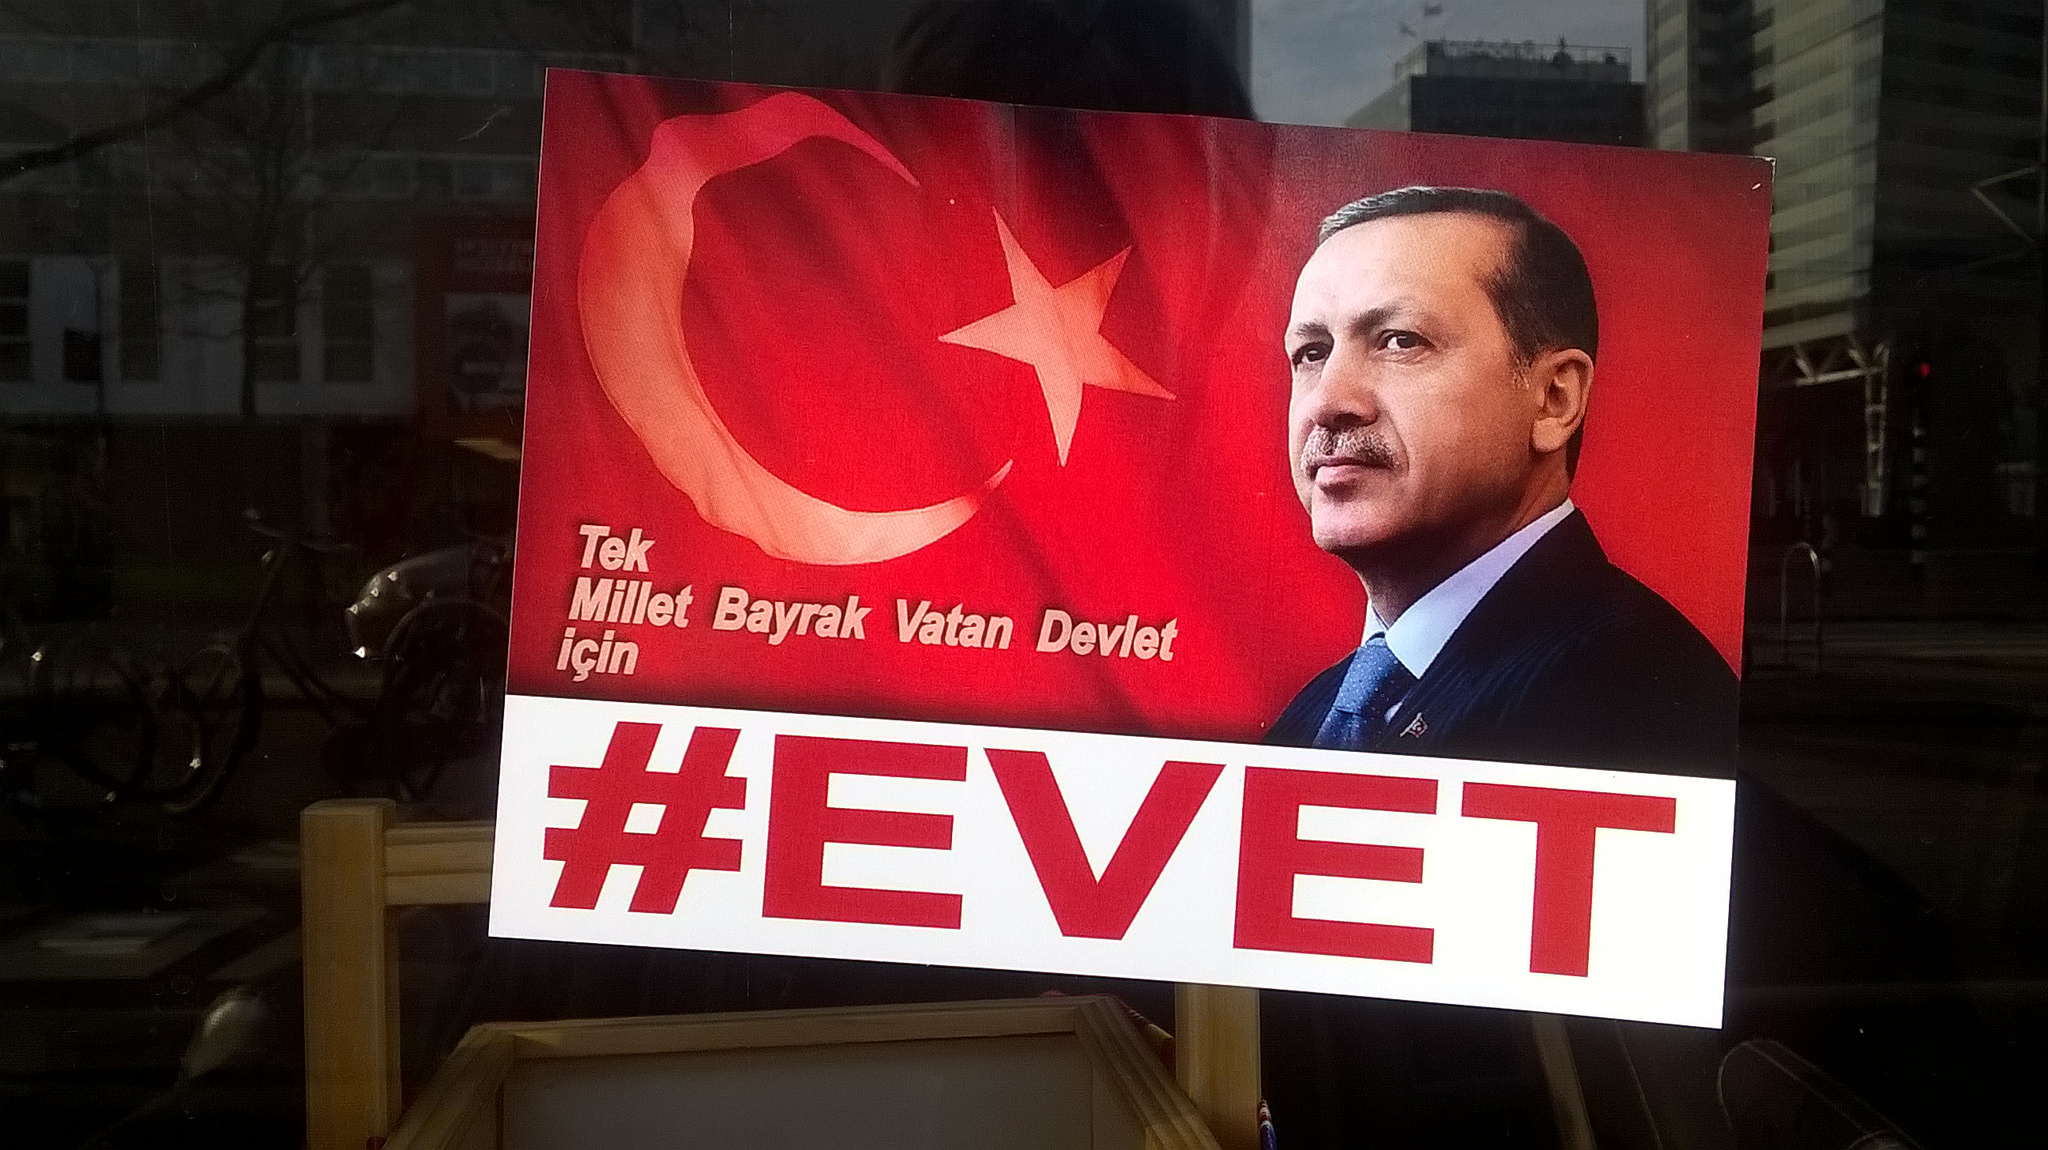 Pro-Erdogan-poster in Rotterdam. Bron: Flickr / Erik de Haan